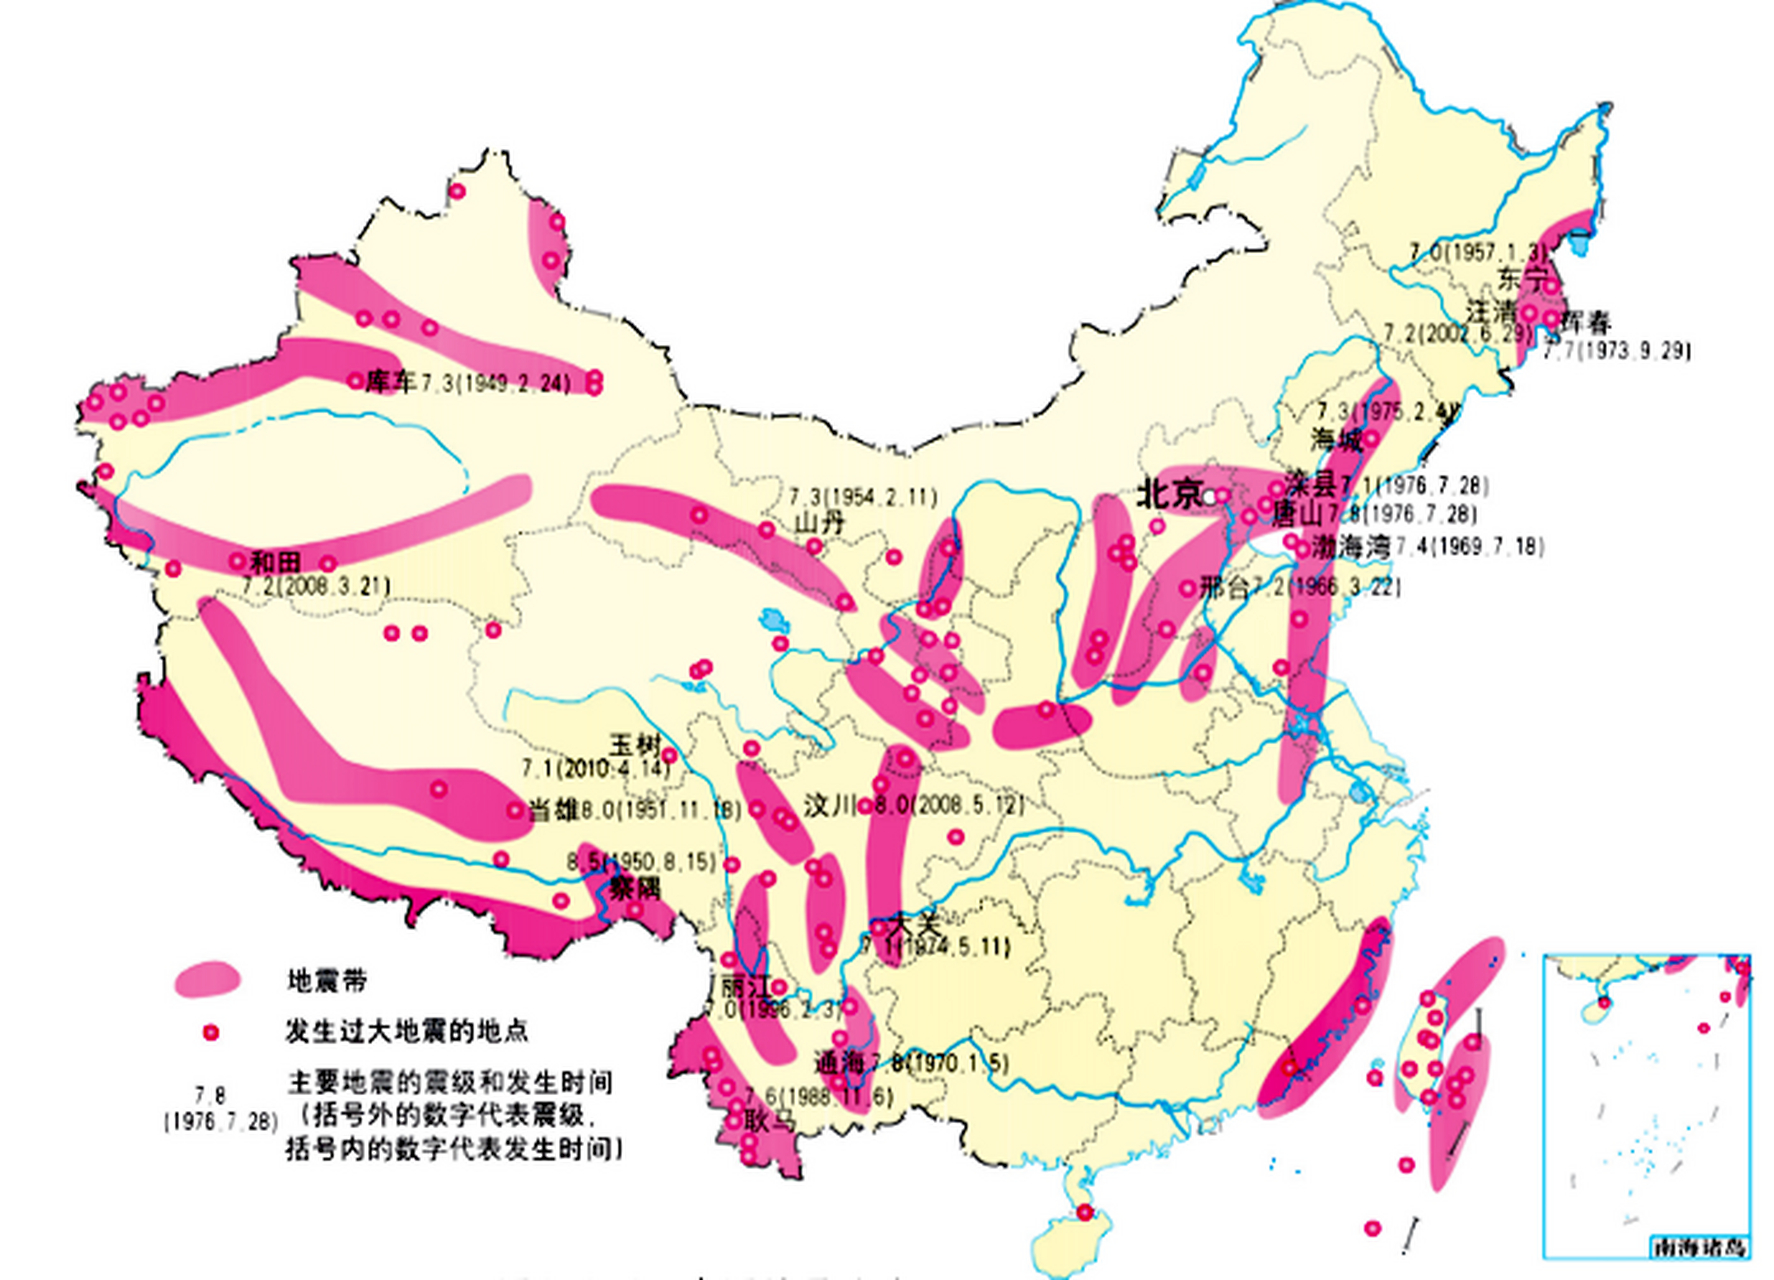 中国地震带 清晰图片